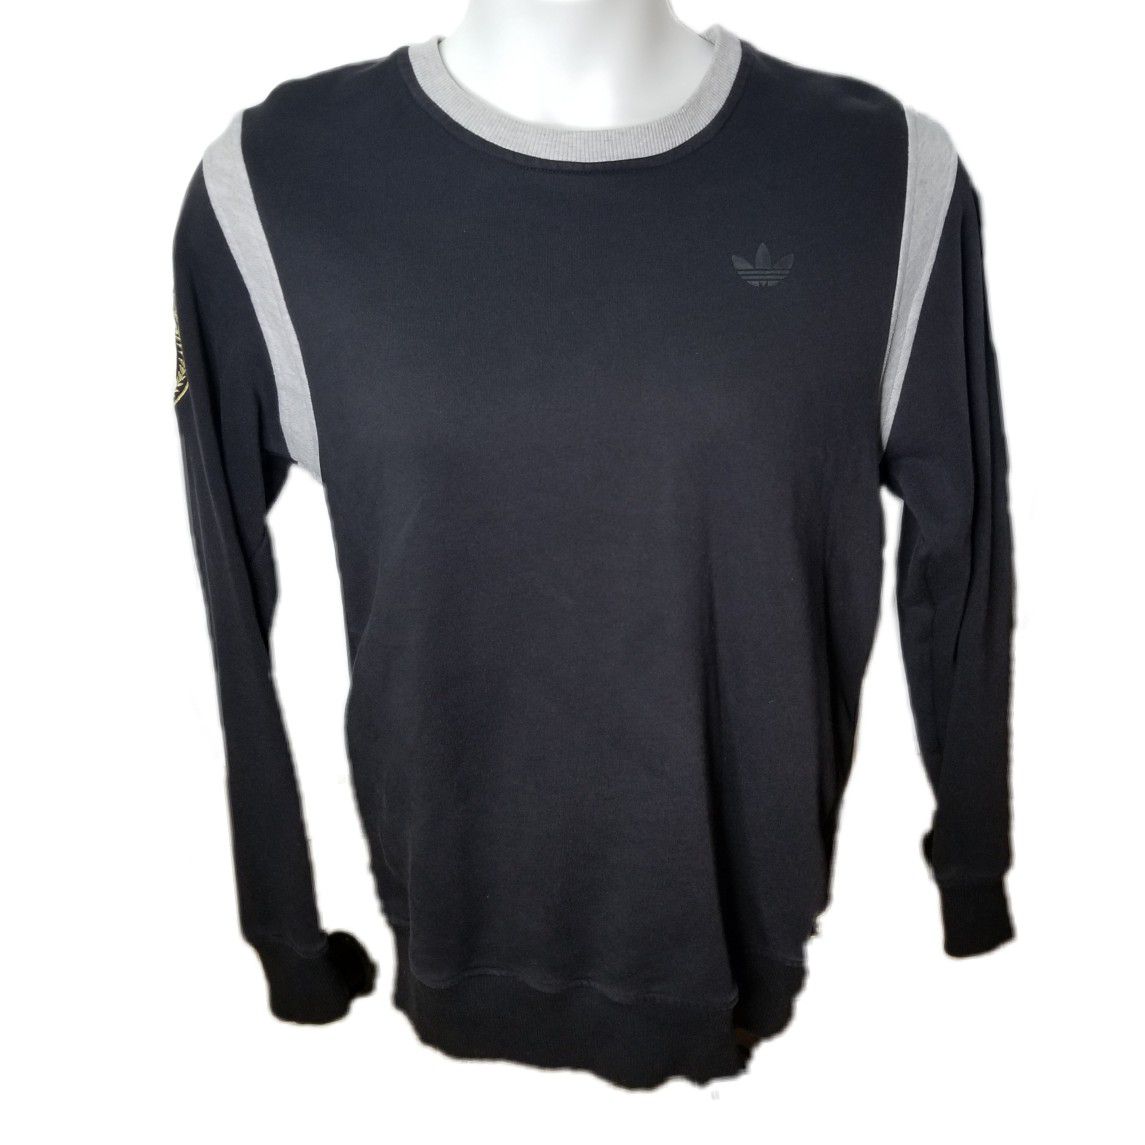 Adidas Originals Sweater Medium